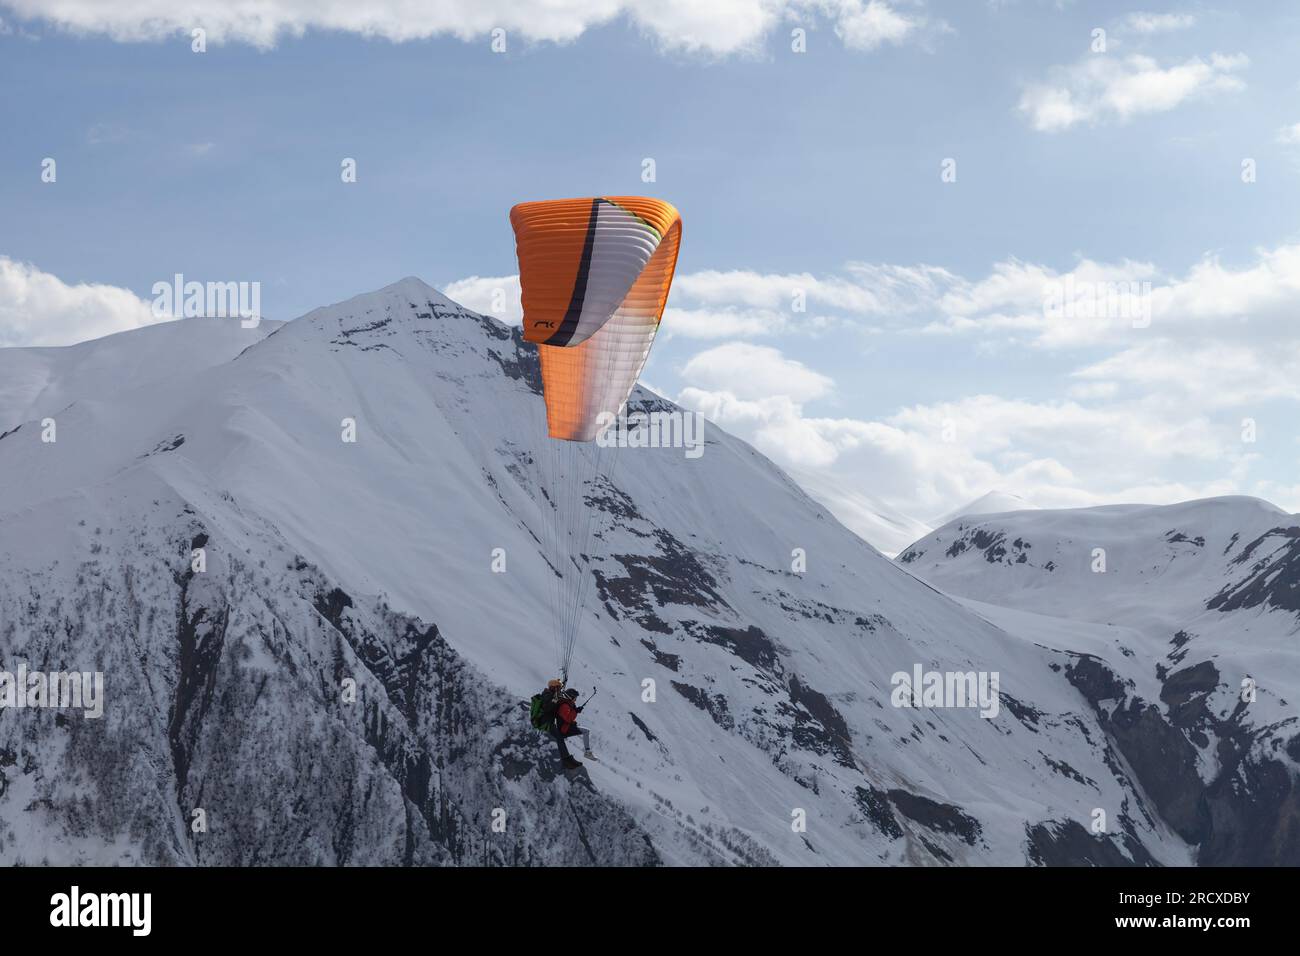 Gudauri, Georgia - 1. Mai 2019: Gleitschirme fliegen an einem sonnigen Tag vor den schneebedeckten Gipfeln des Kaukasus Stockfoto